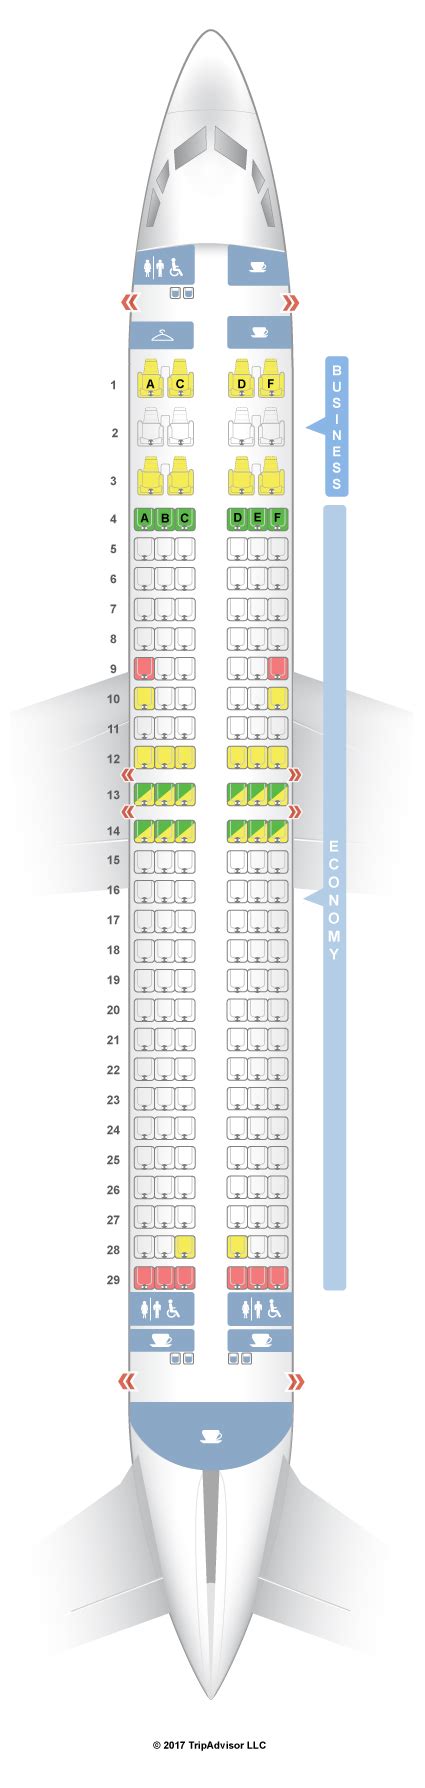 Seatguru Seat Map Qantas Boeing 737 800 738 V1